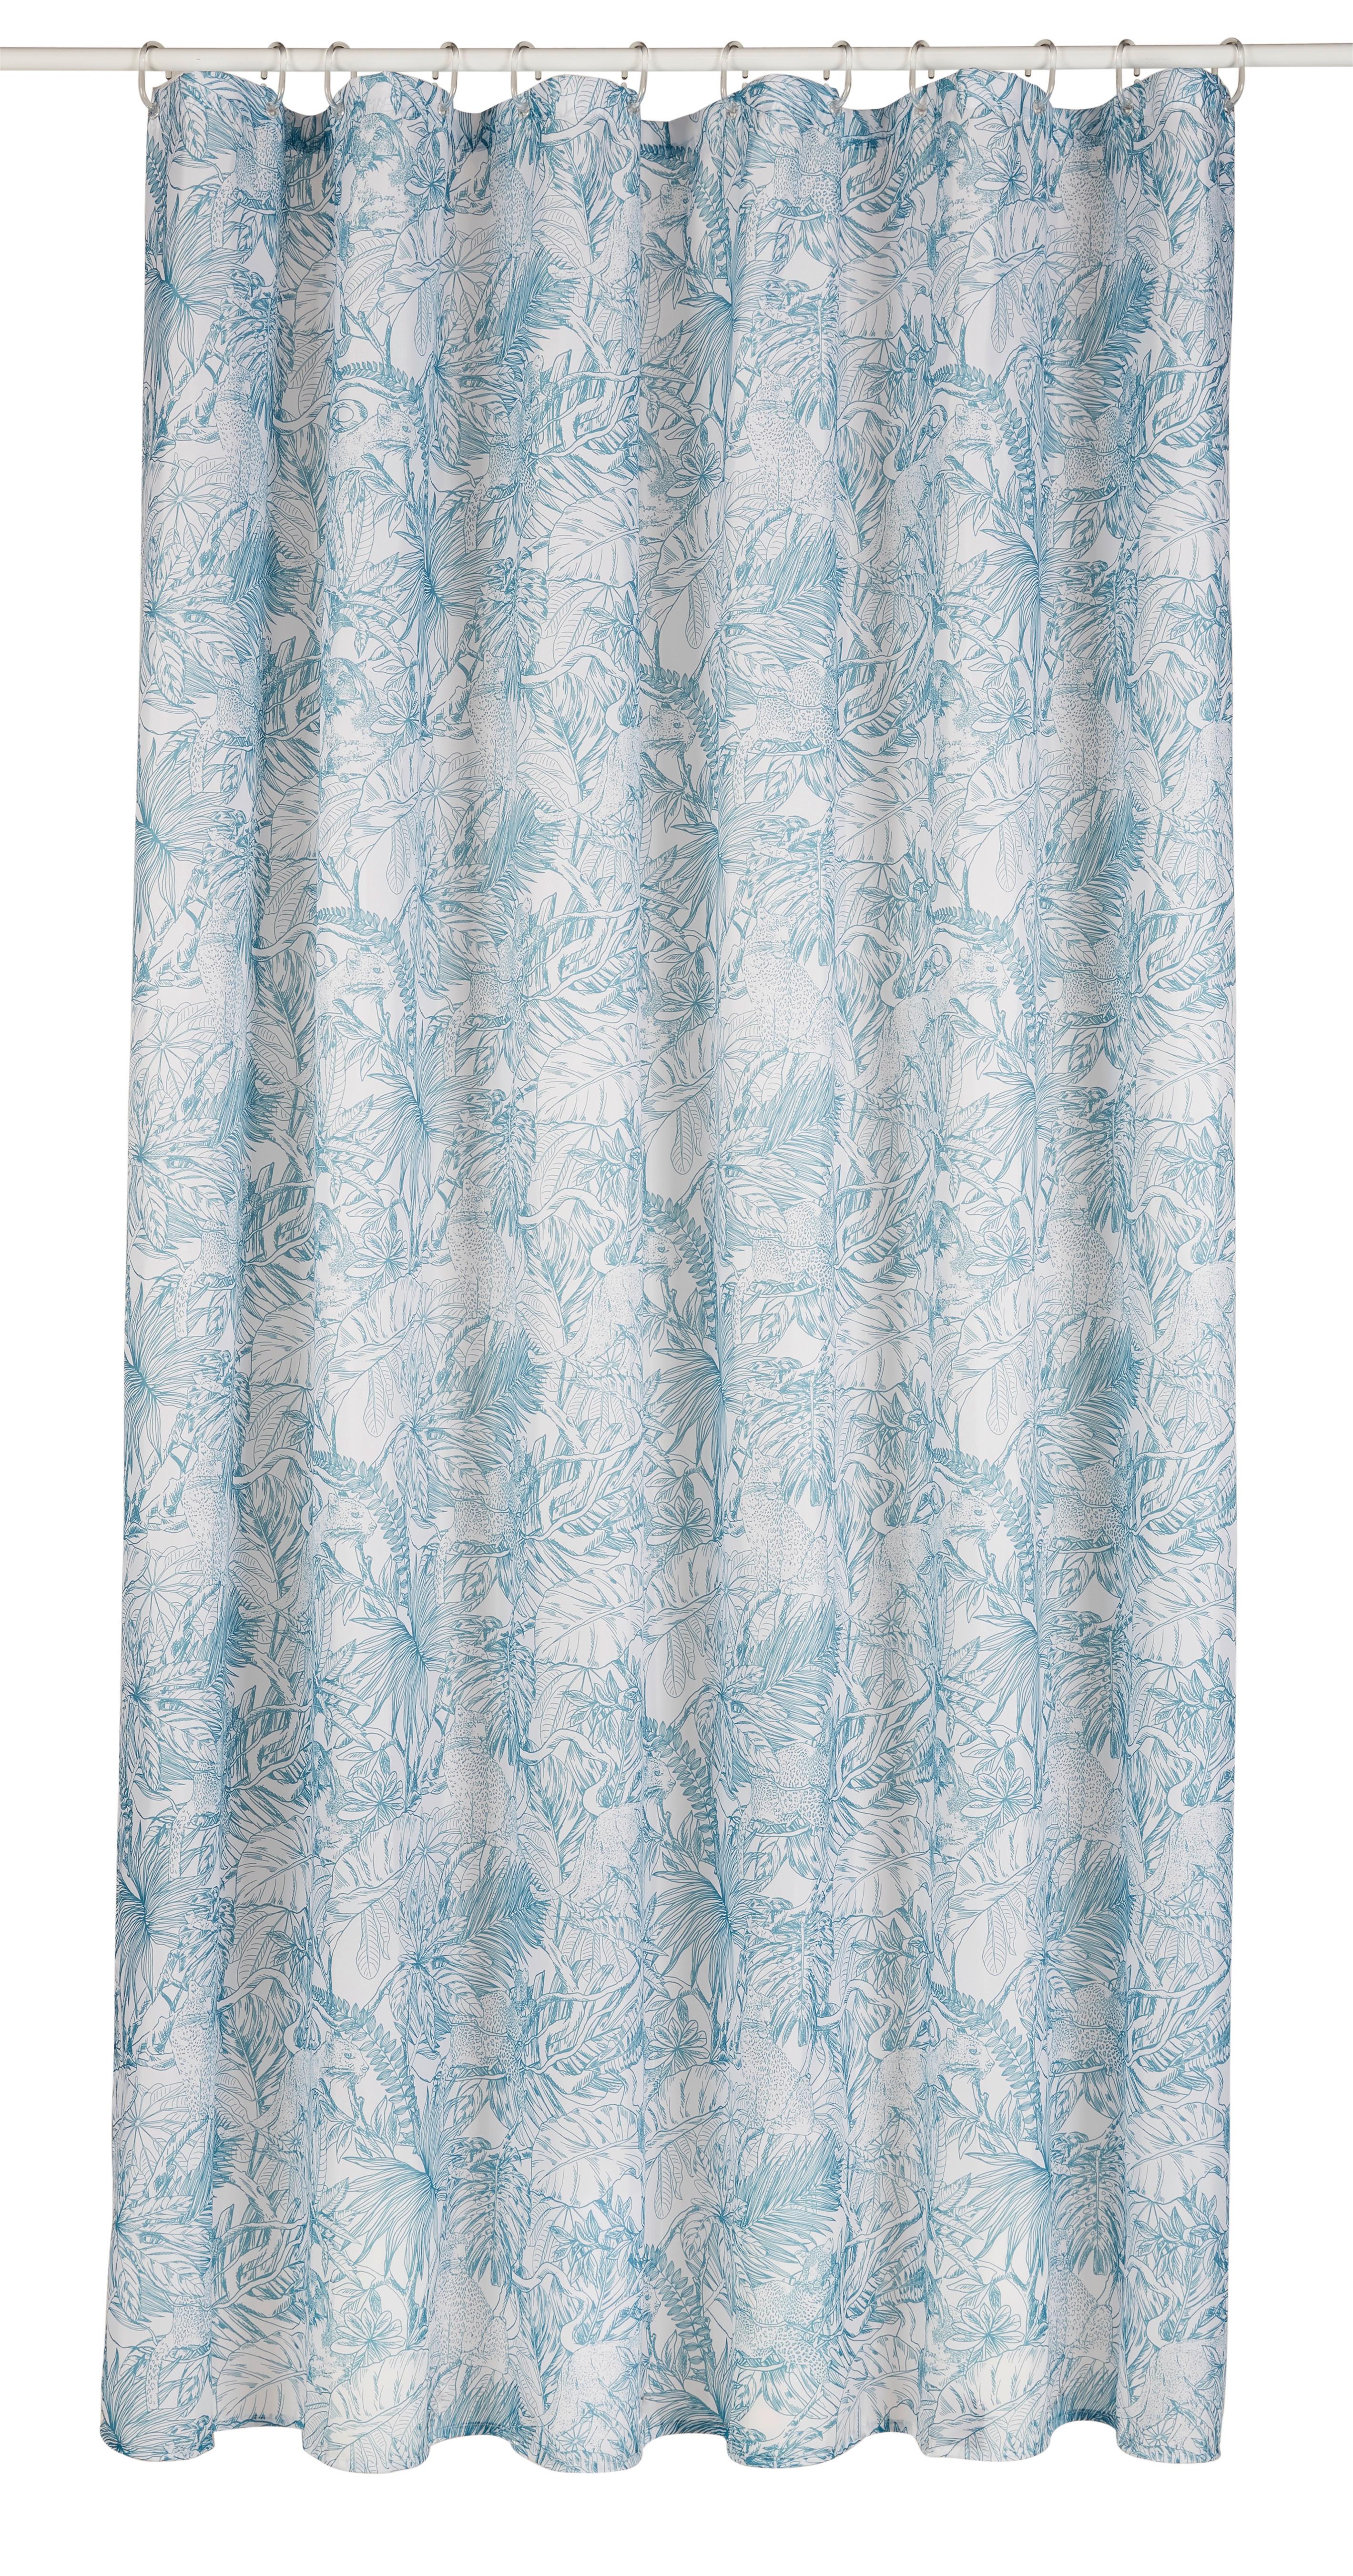 Duschvorhang Blätter in Blau ca. 180x200cm - Blau/Weiß, Textil (180/200cm) - Modern Living